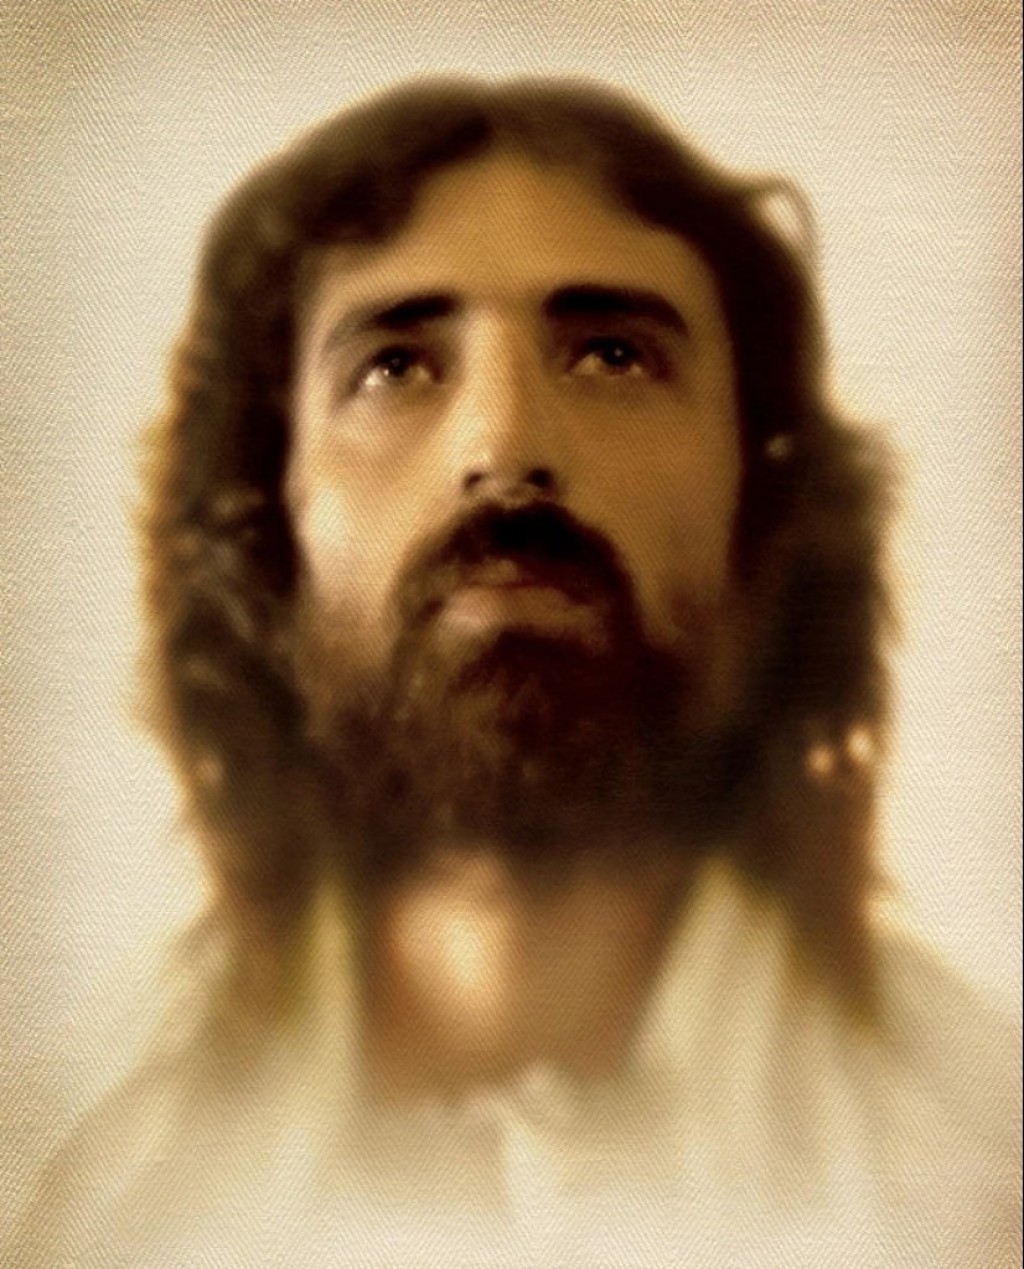 When will Jesus return? | hubpages